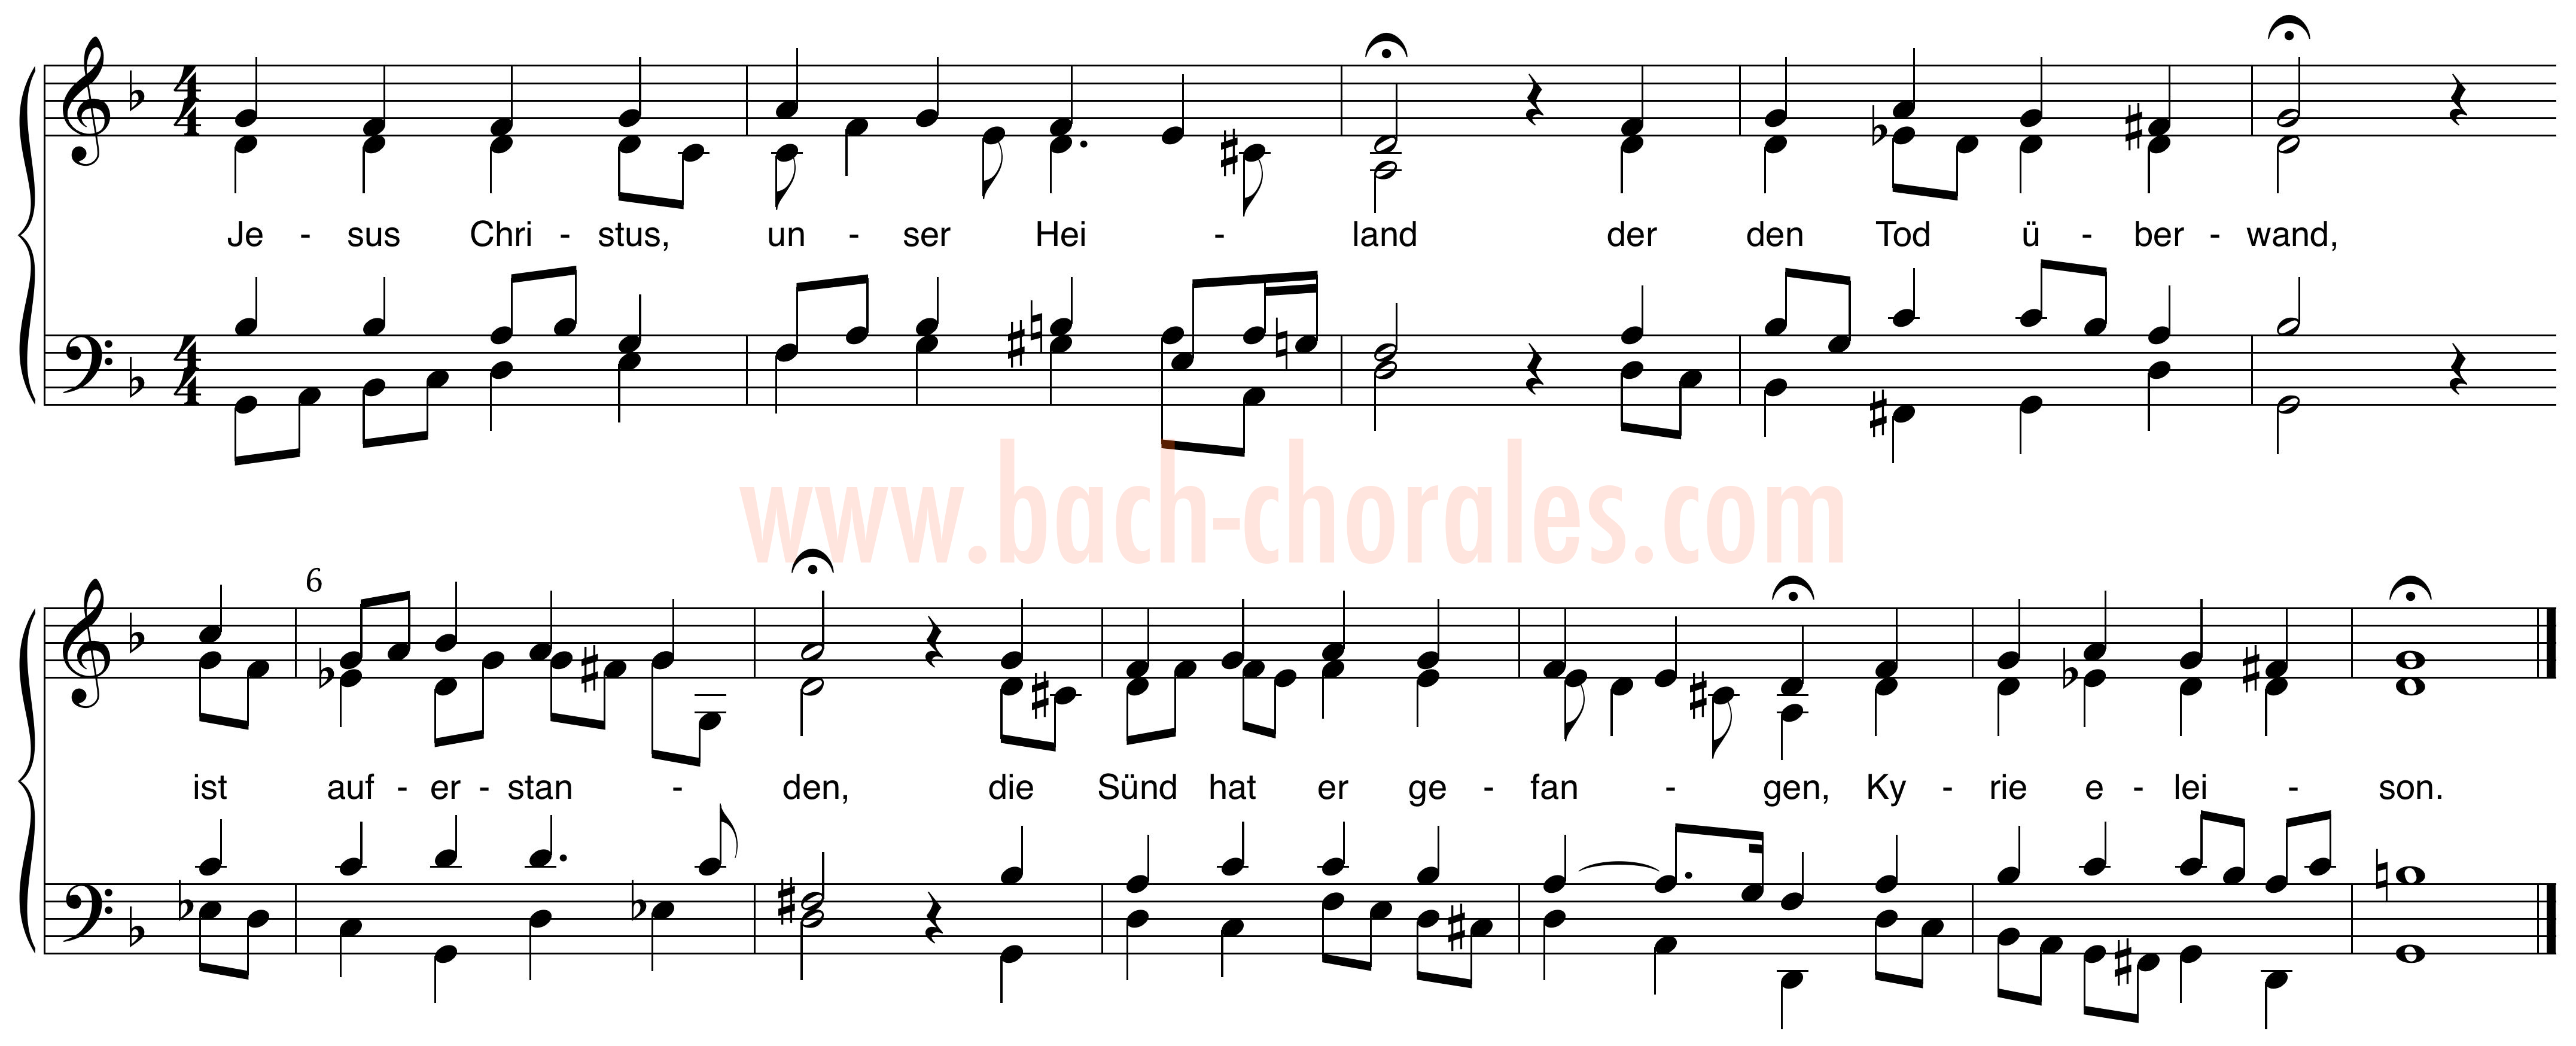 notenbeeld BWV 364 op https://www.bach-chorales.com/